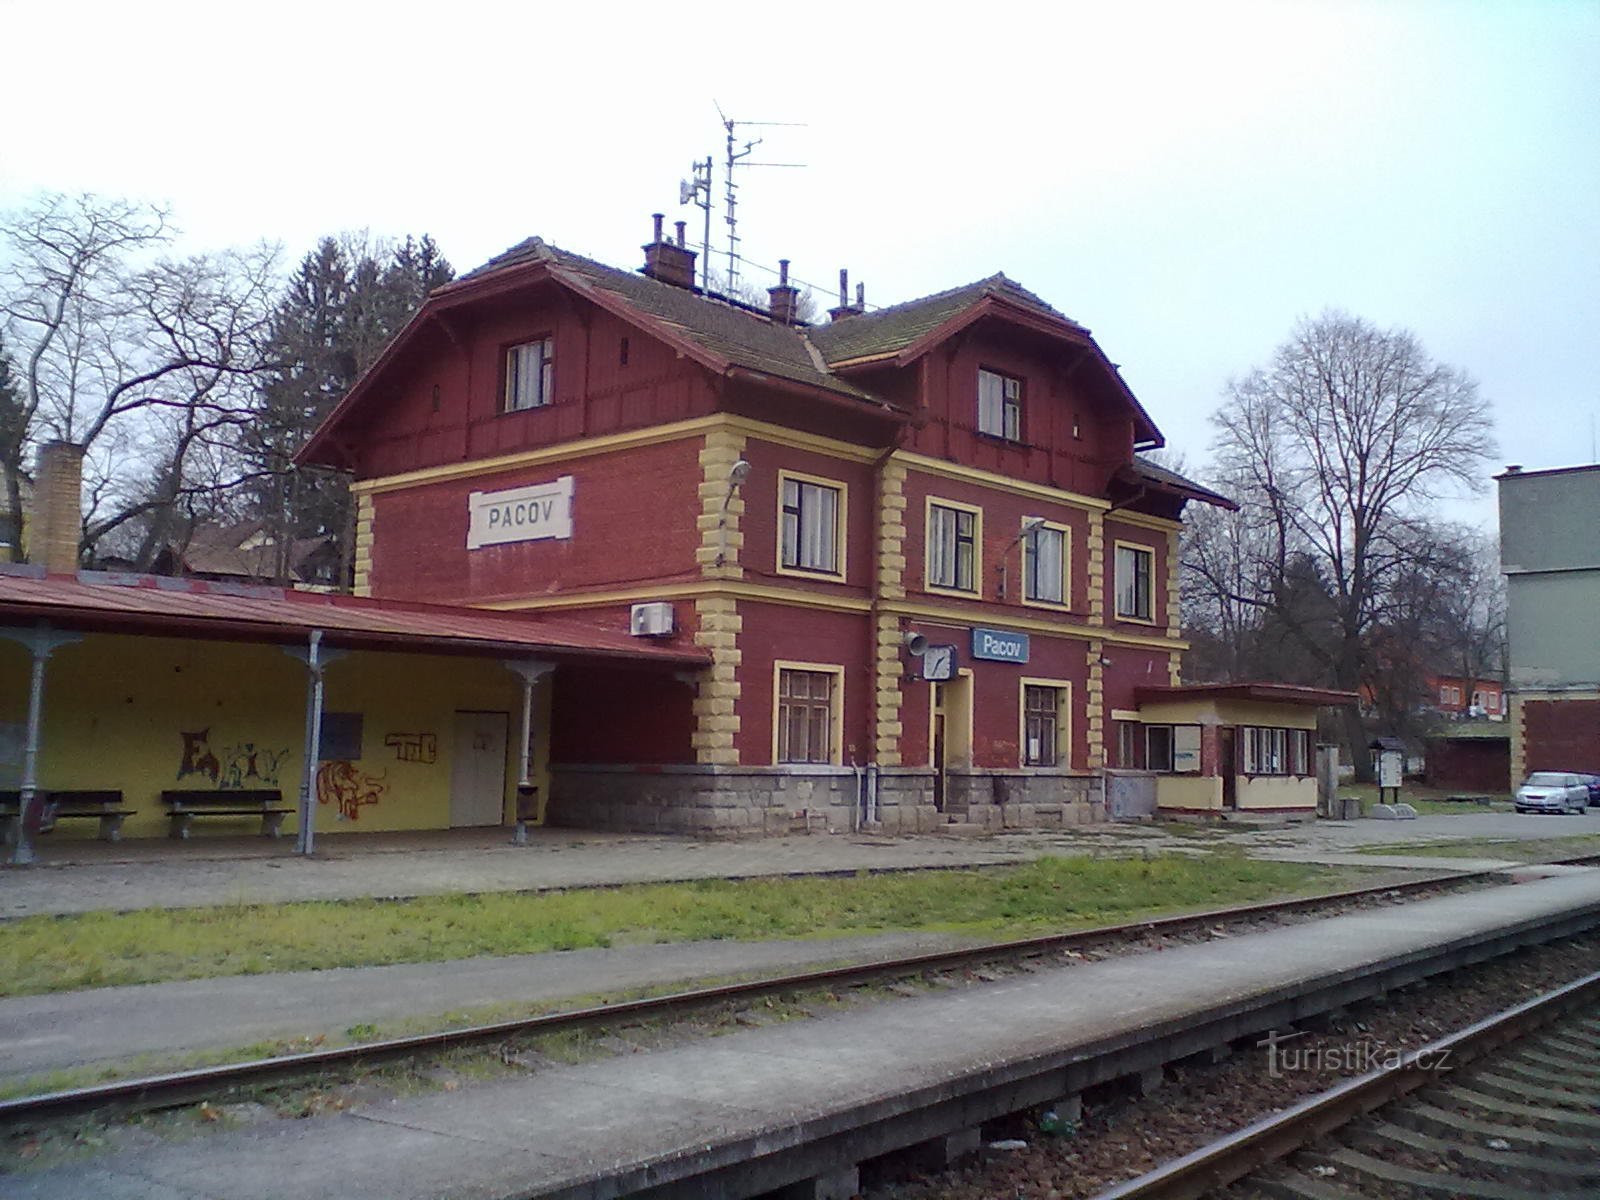 1. gare de Pacov - point de départ et d'arrivée du pèlerinage.